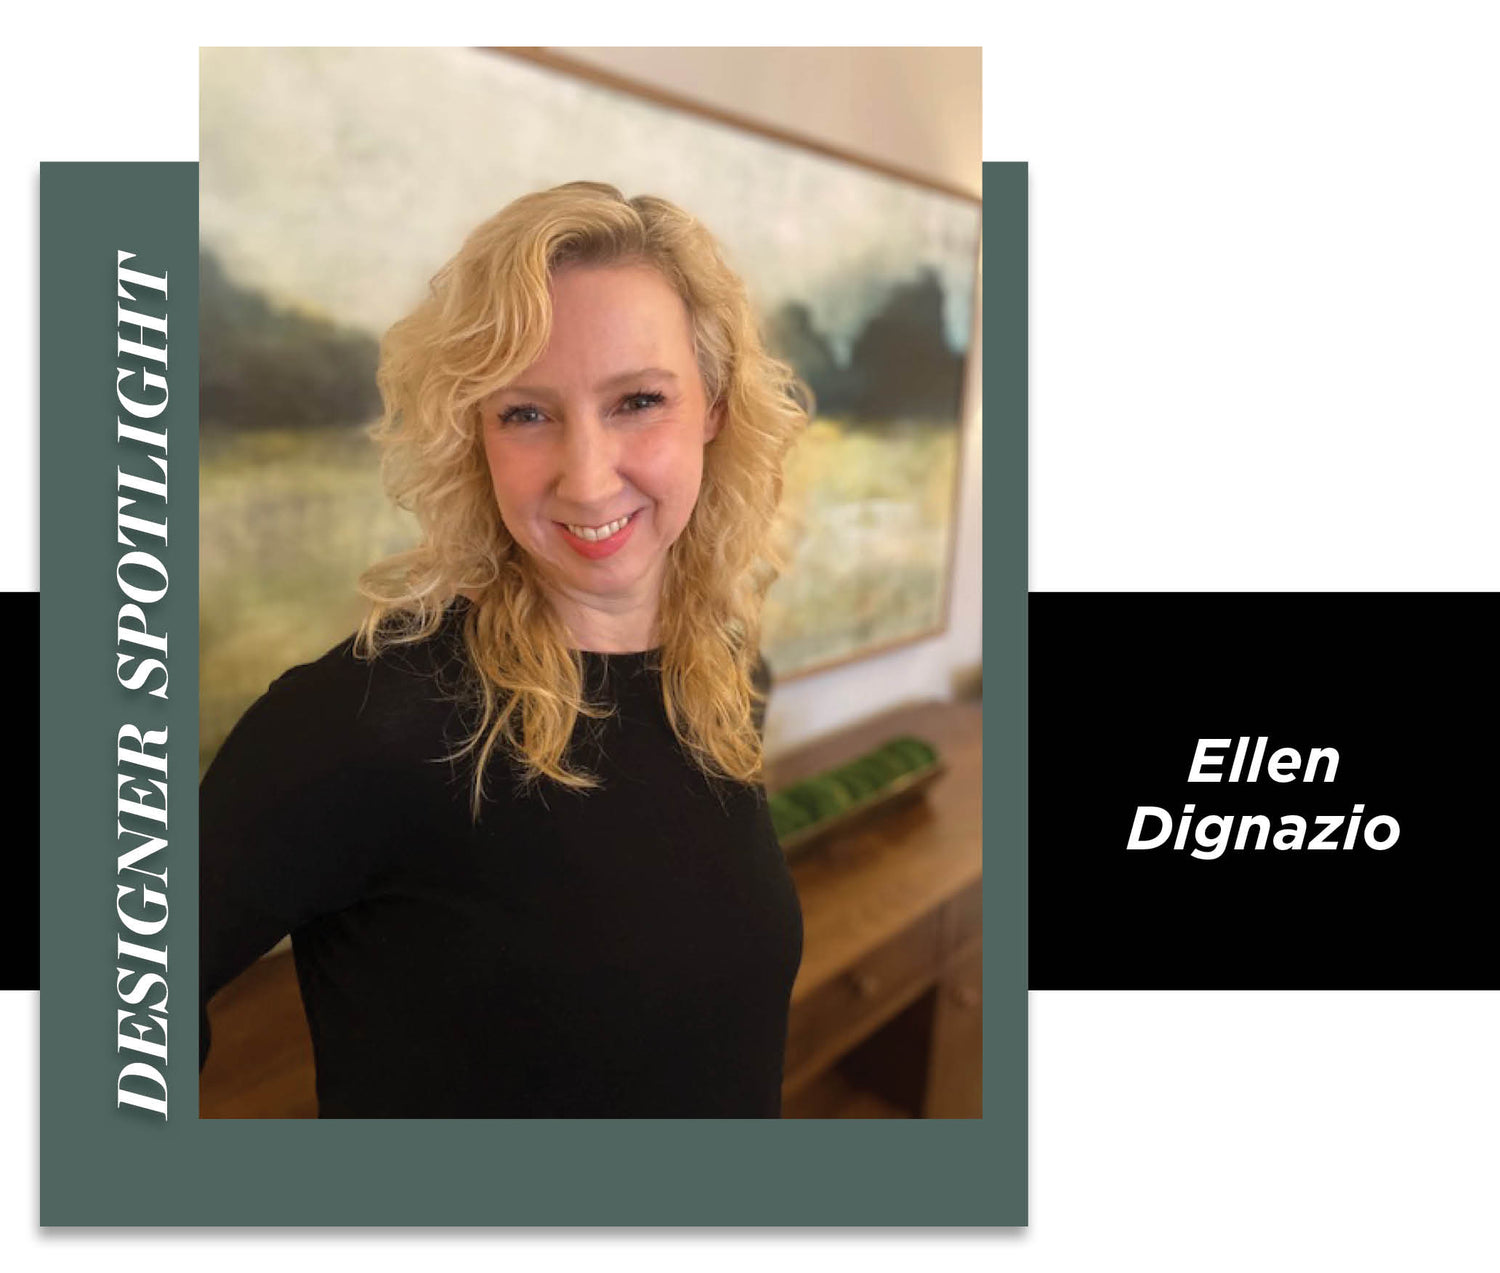 Meet Ellen Dignazio!